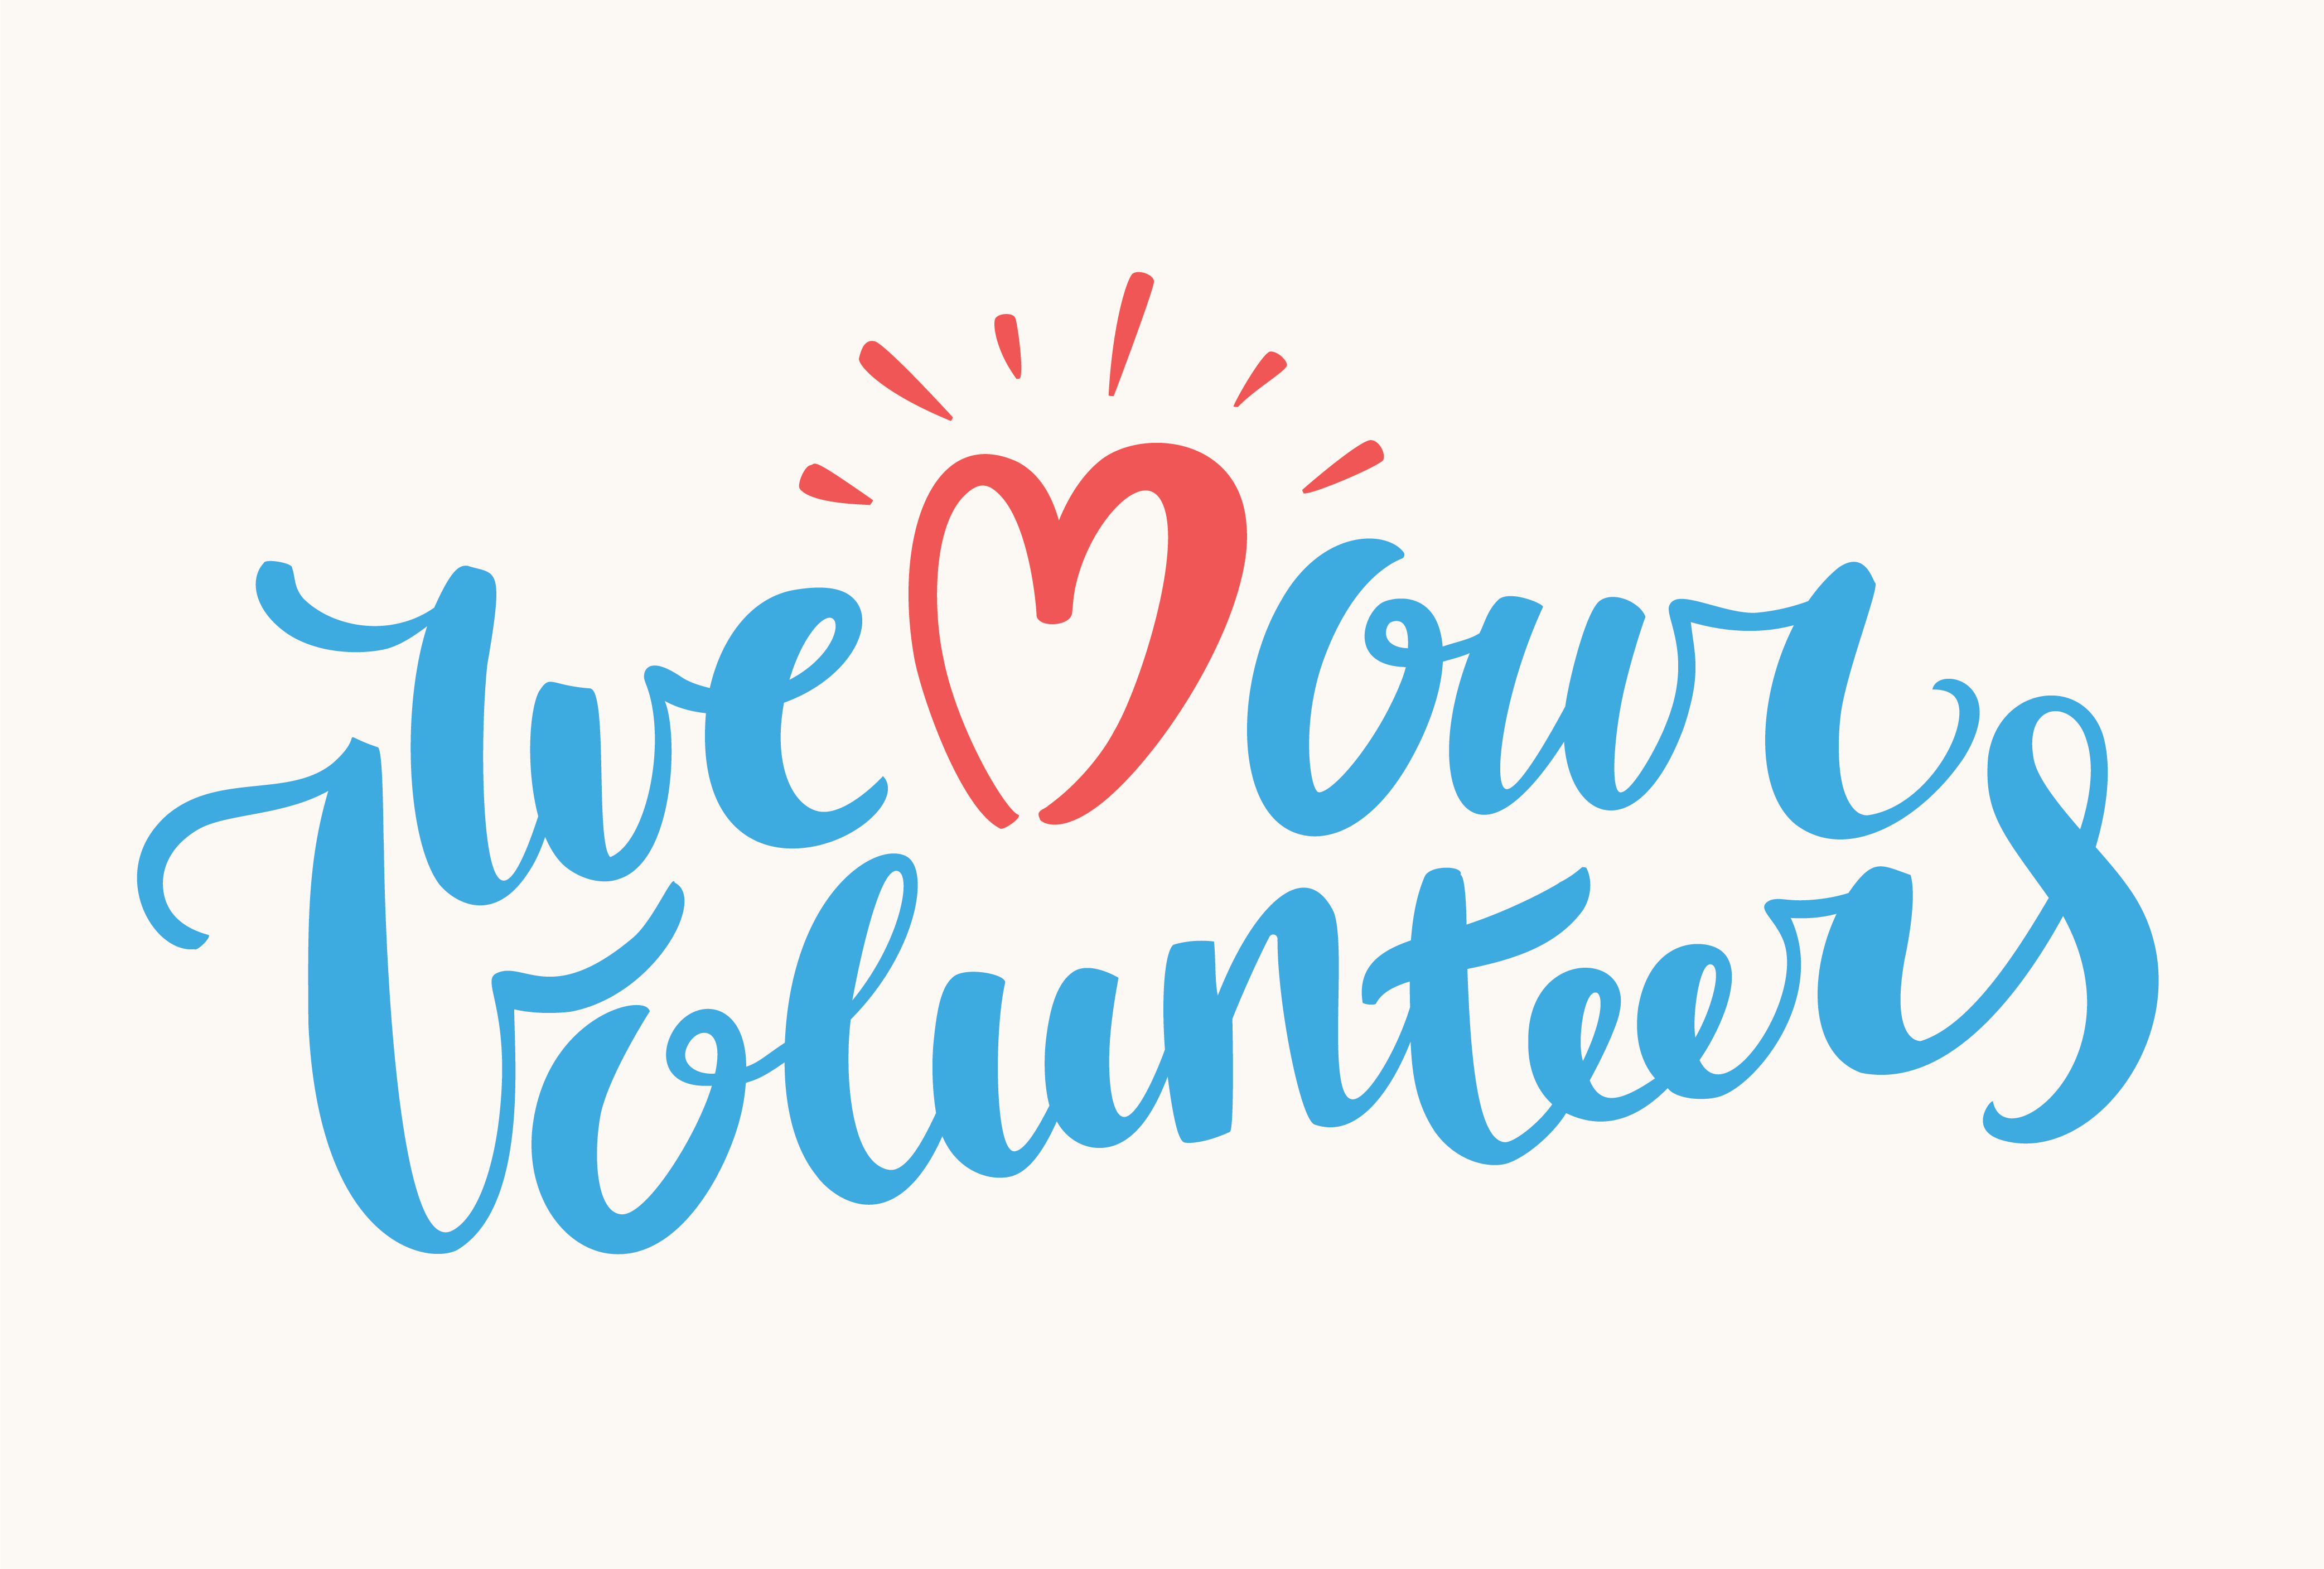 We love our volunteers.